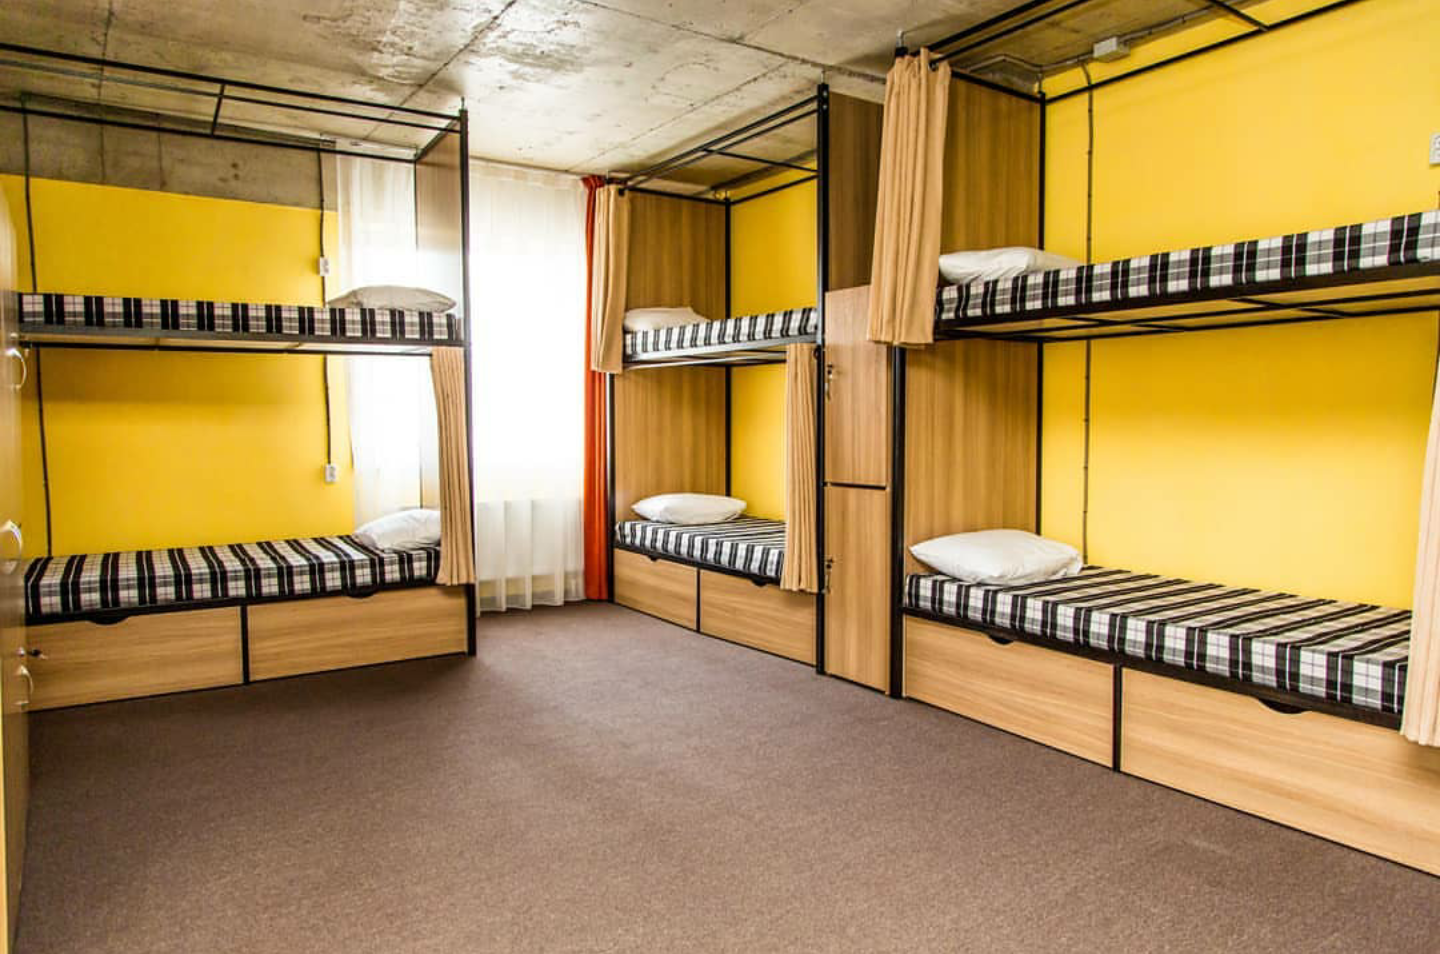 Сценарий общежития. Хостел Саларьево. Двухъярусная кровать для хостела. Двухъярусные кровати для хостелов. Хостел комната.